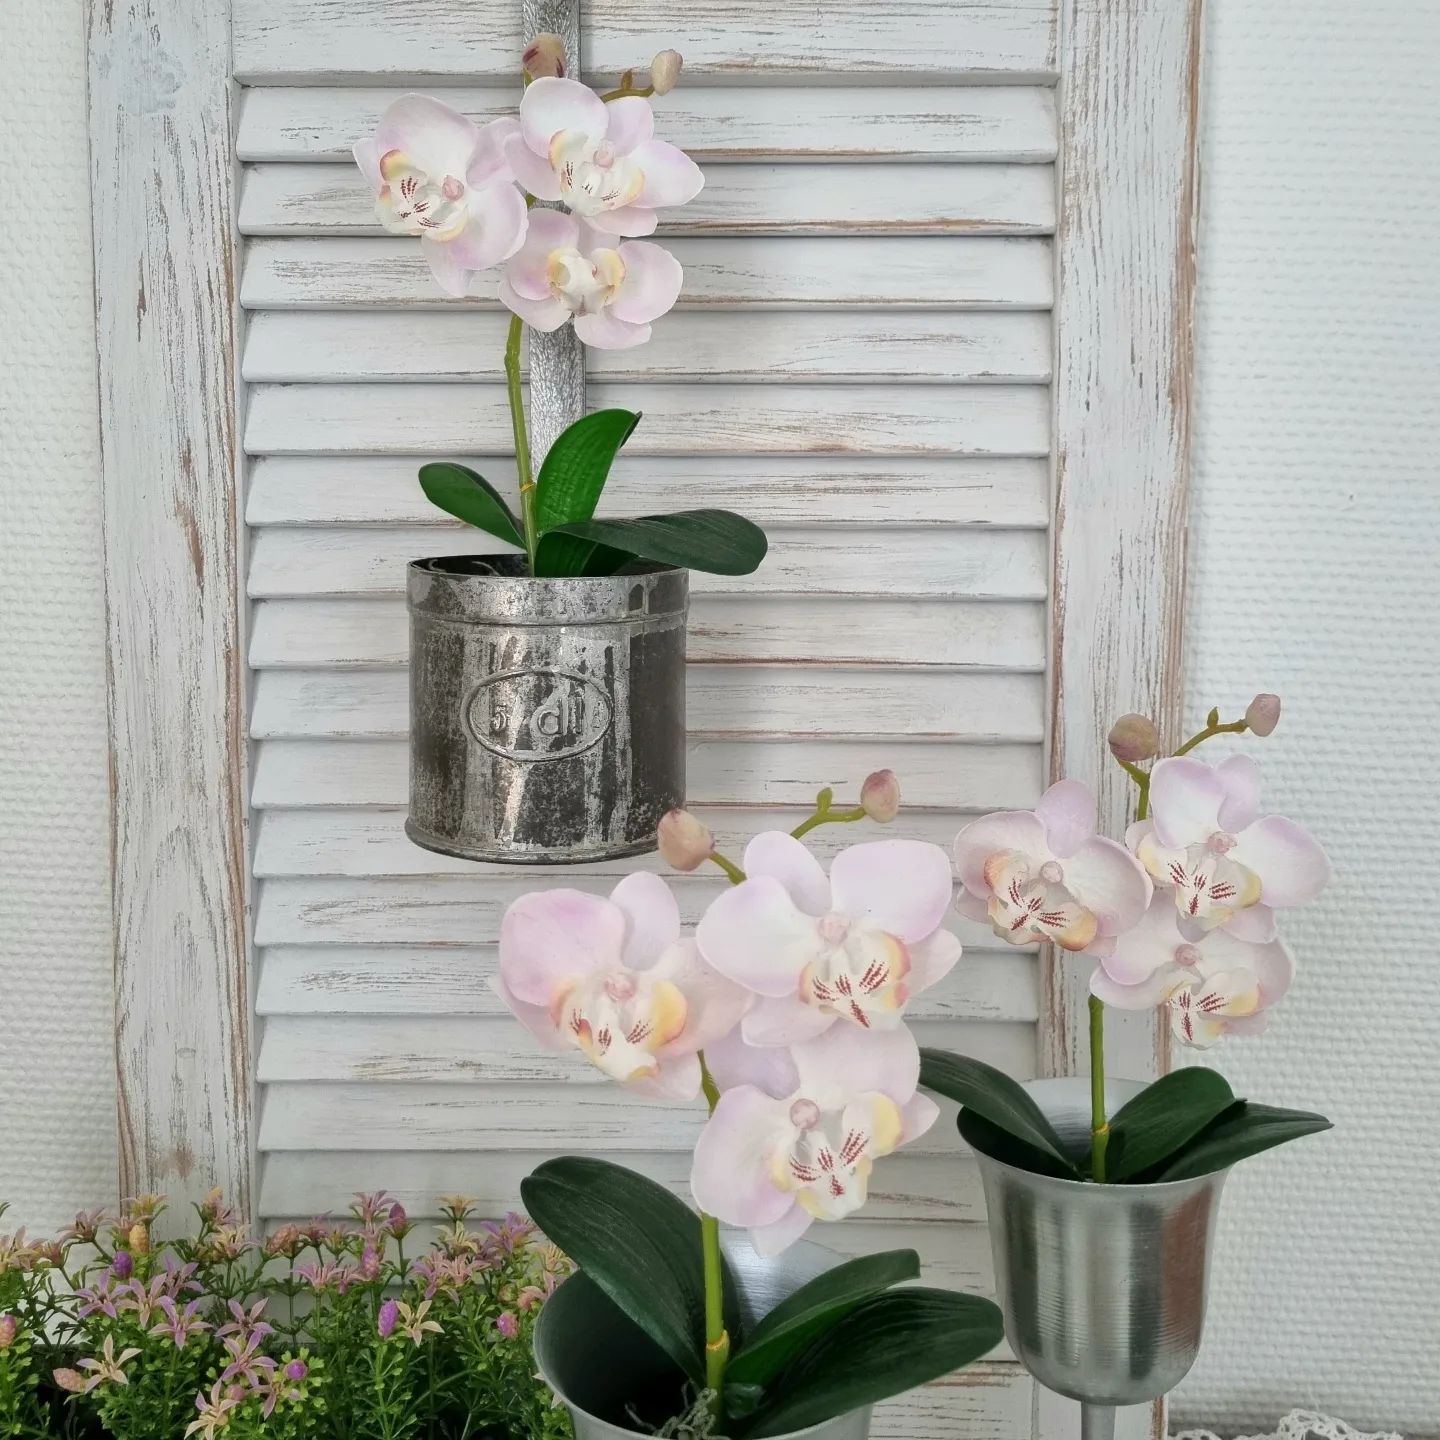 Orkidé lys rosa i potte